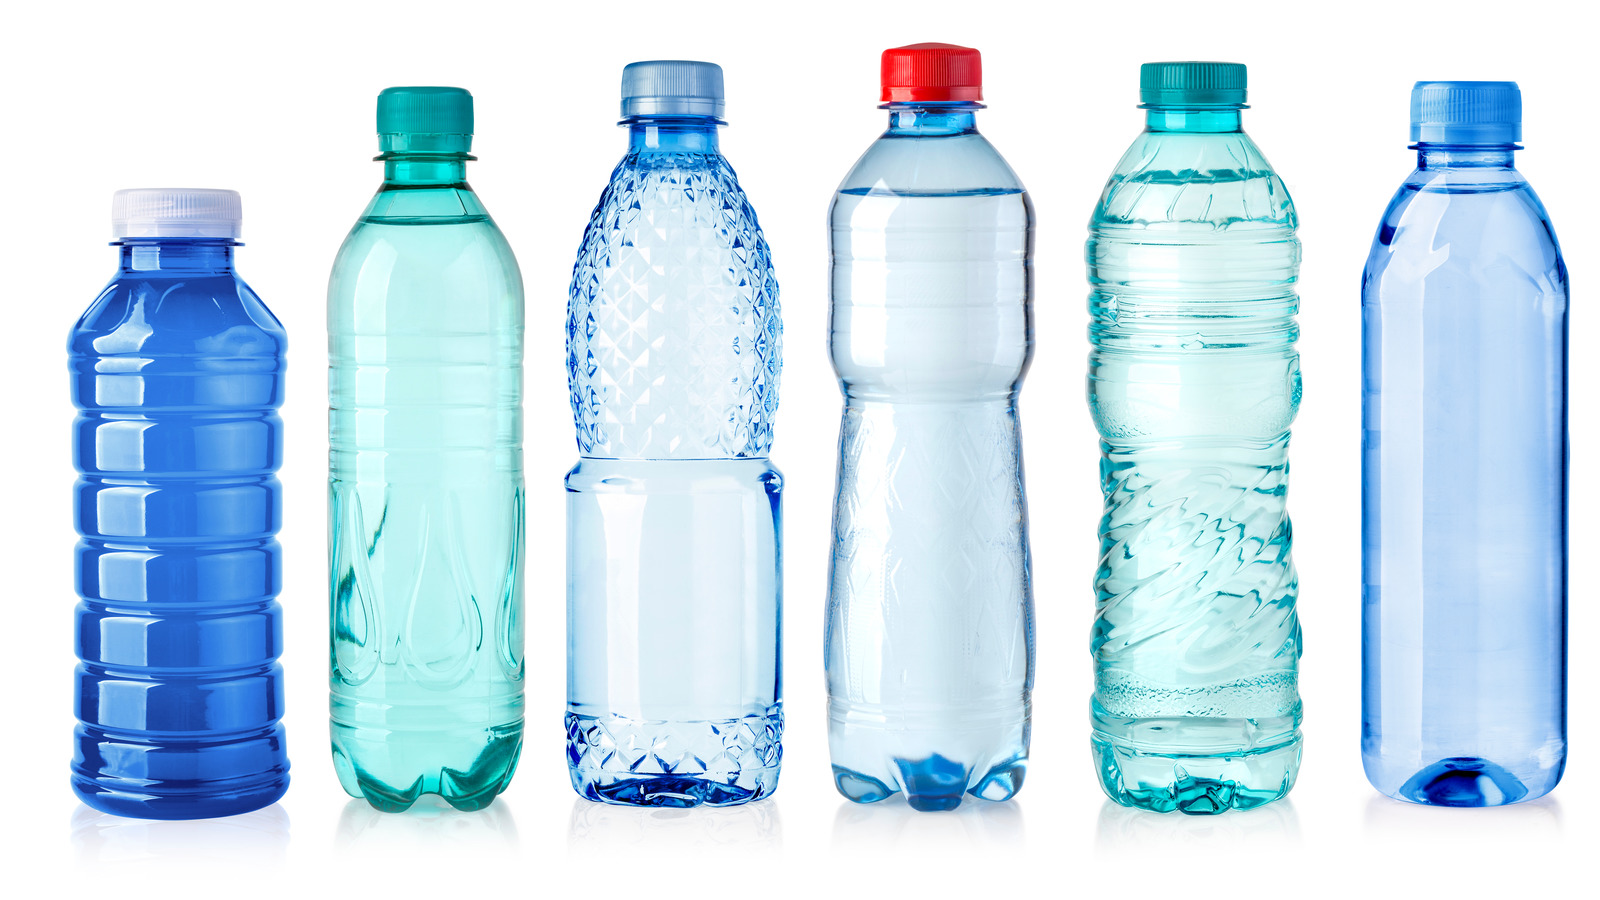 63 литра воды. 3 Бутылки воды. Пластиковые бутылки на белом фоне. Бутылка холодной воды. Бутылка 3 литра пластиковая.